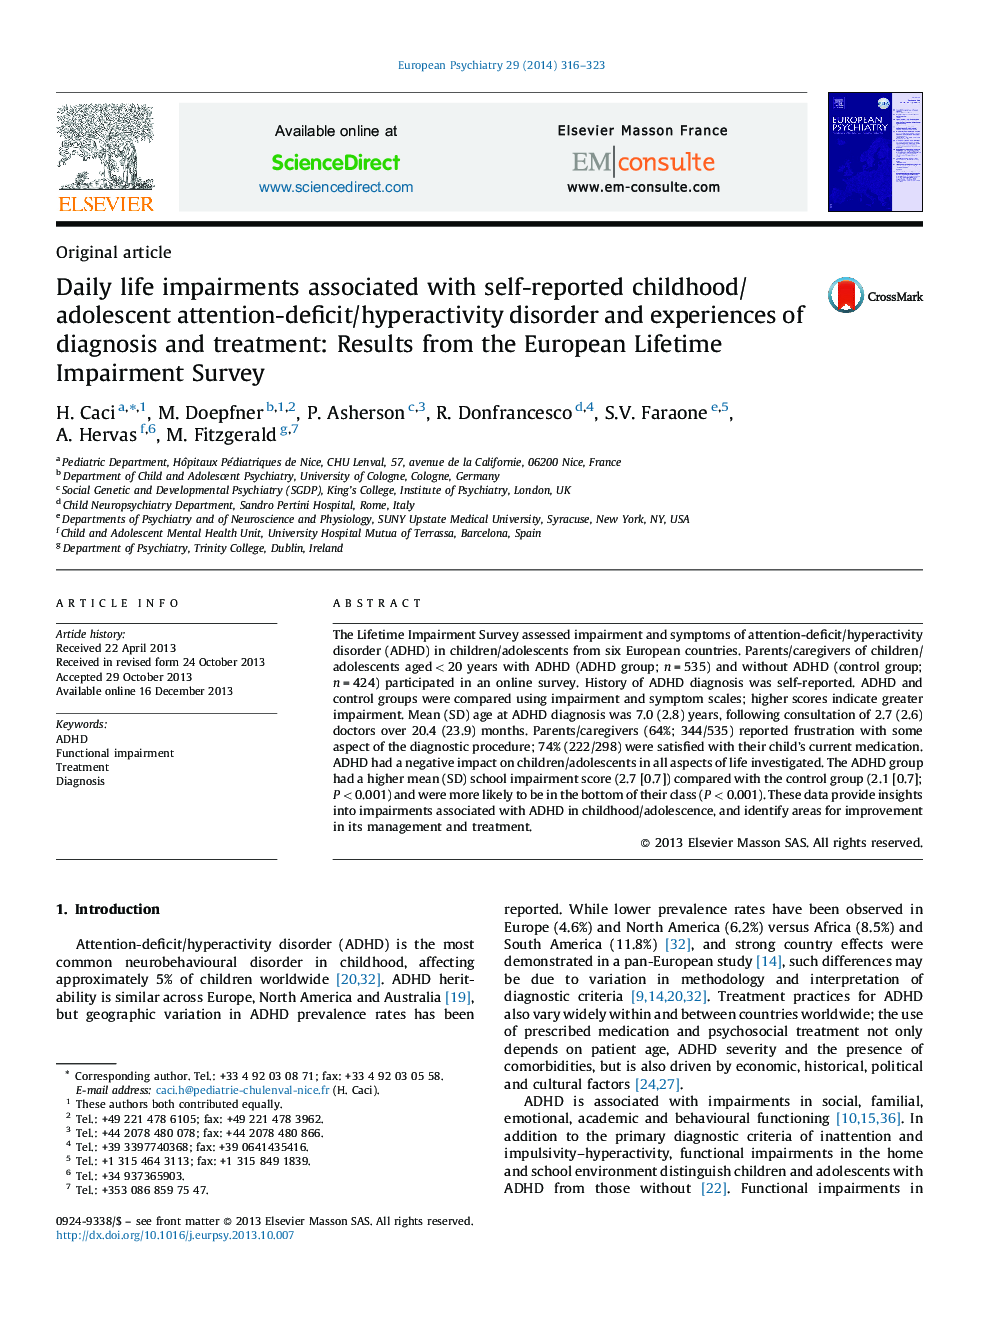 اختلالات زندگی روزمره همراه با اختلال کمبود توجه / ناراحتی نوجوانان / نوجوانان و تجربیات تشخیص و درمان خود گزارش شده: نتایج مطالعات نقص در زندگی در اروپا 